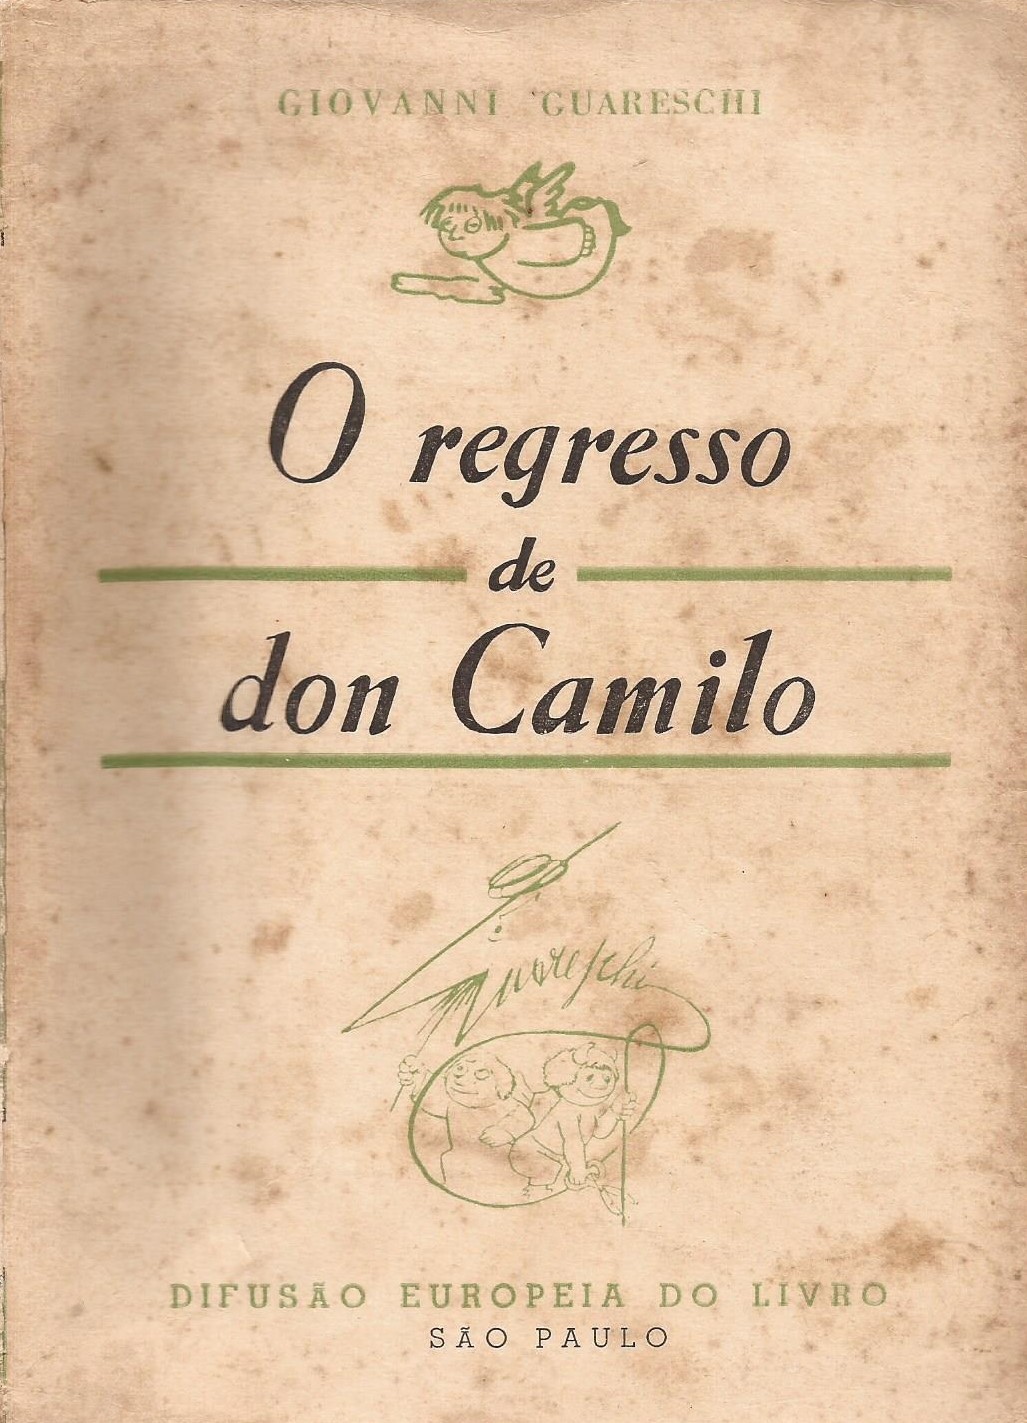 https://www.literaturabrasileira.ufsc.br/_images/obras/o_regresso_de_don_camilo_sd_ok.jpg